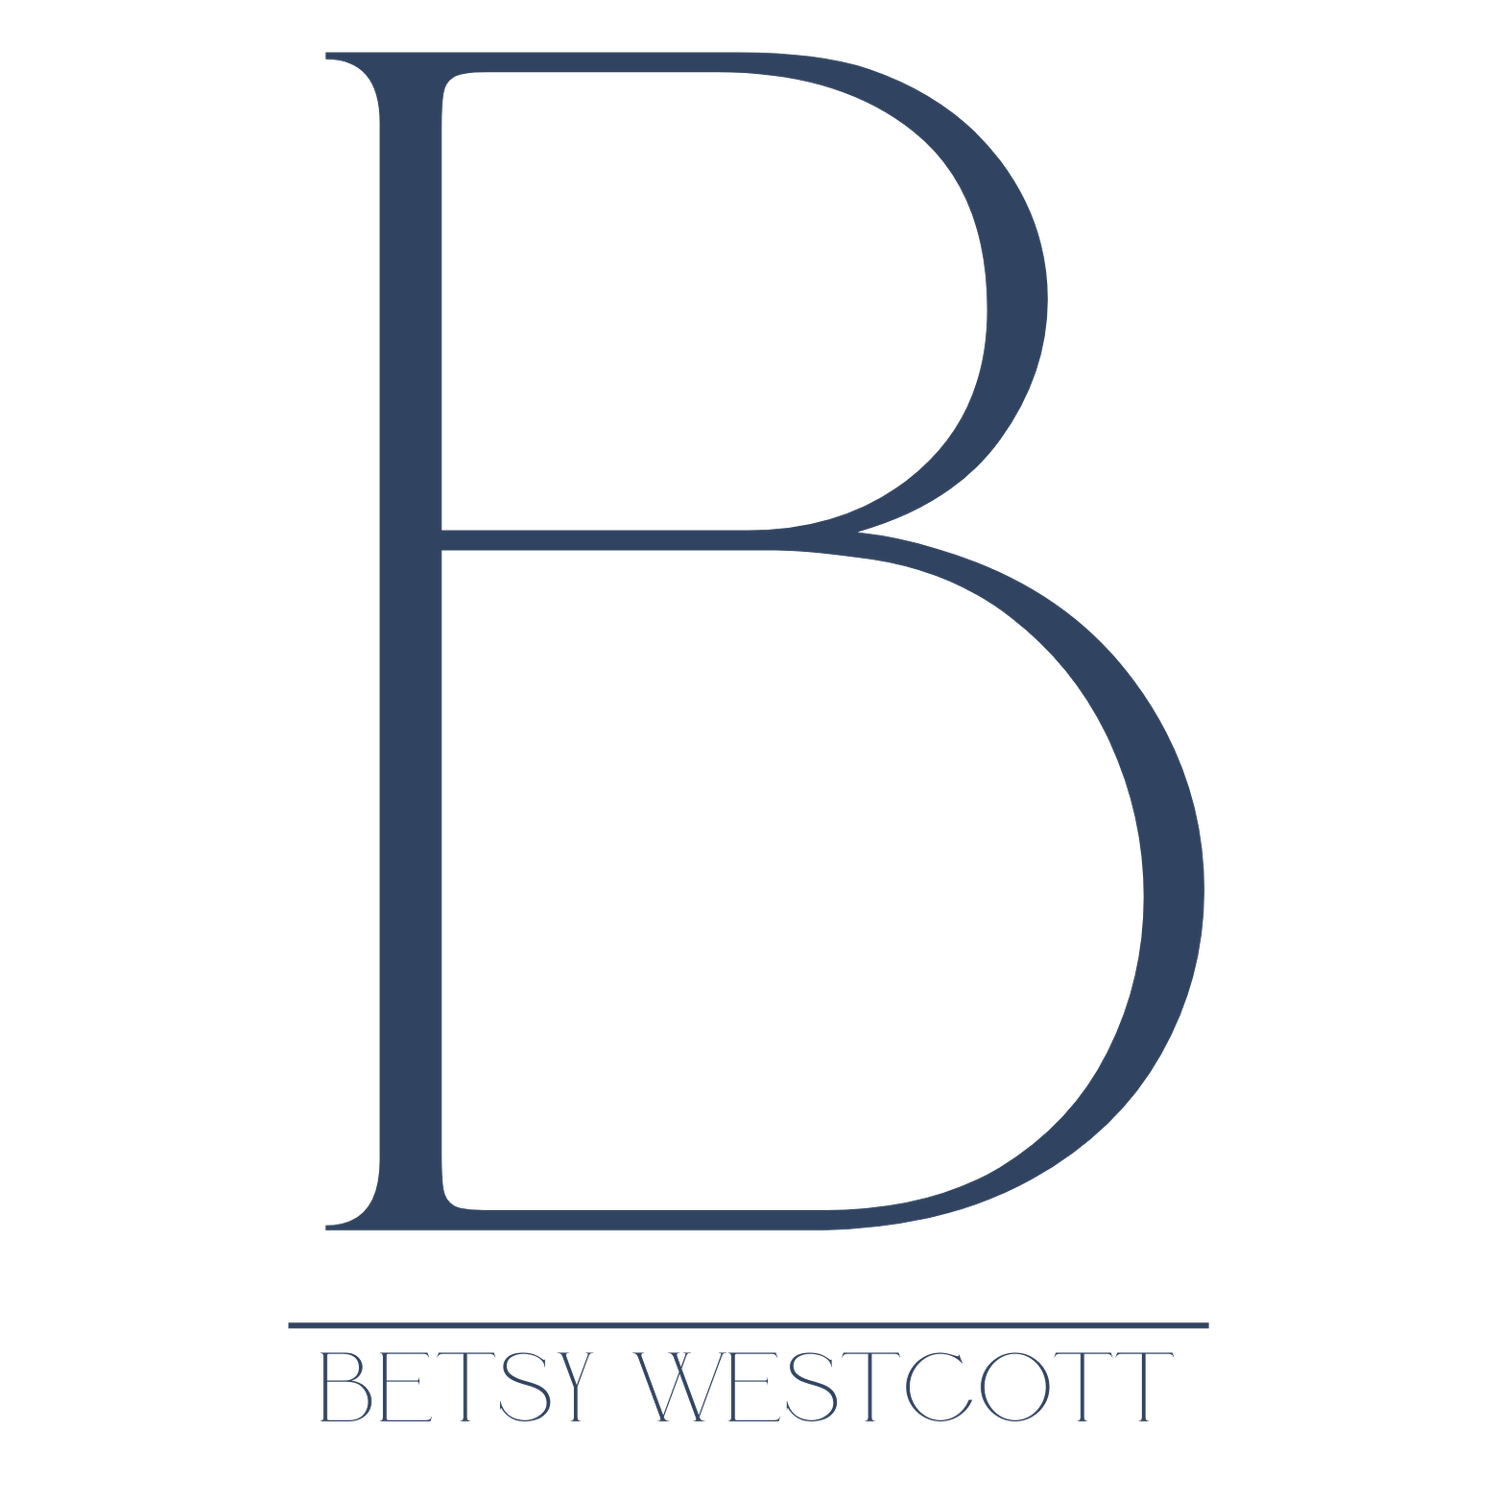 Betsy Westcott